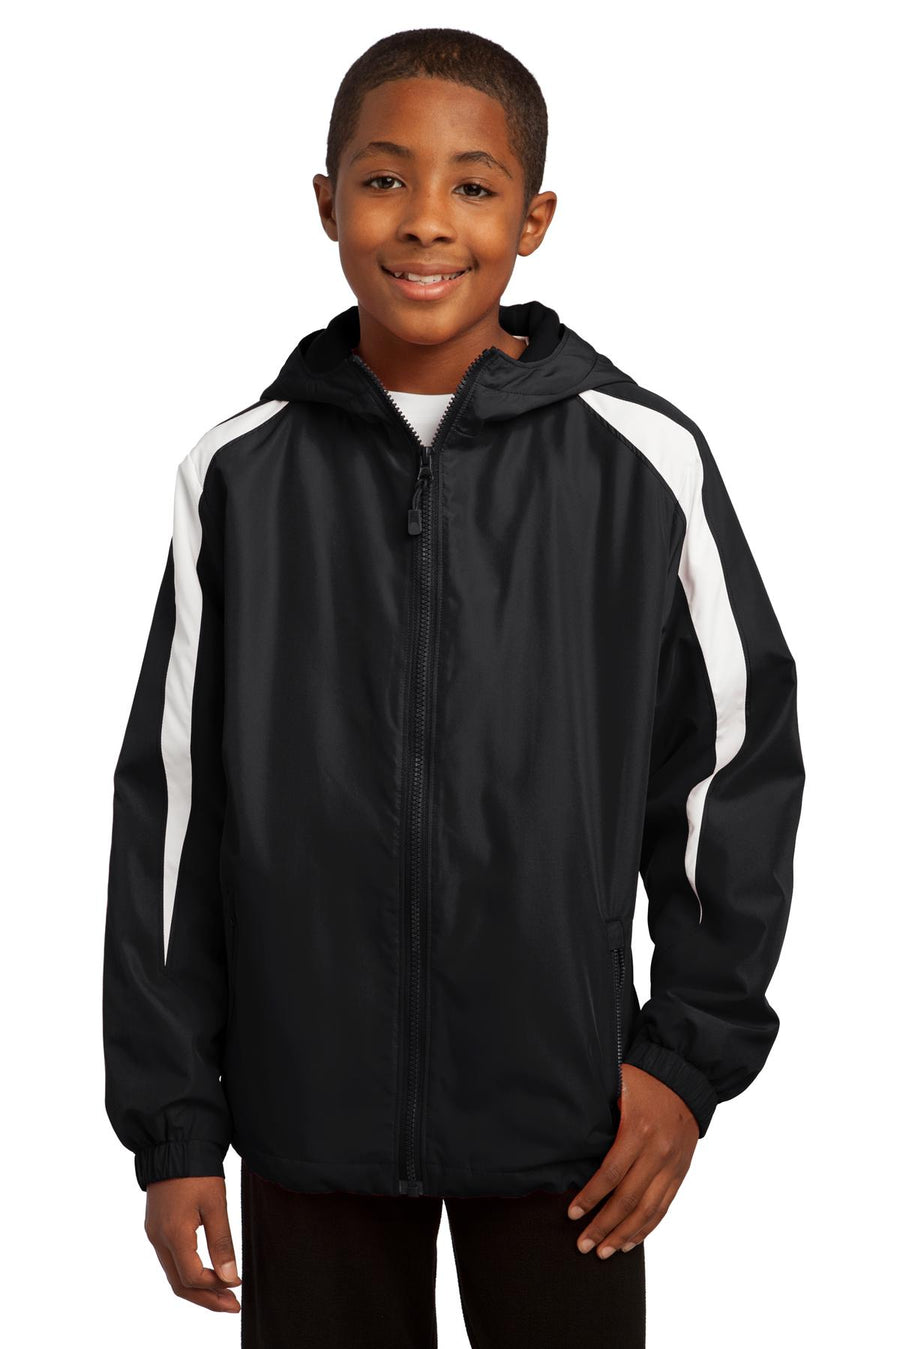 Sport-Tek Youth Fleece-Lined Colorblock Jacket.